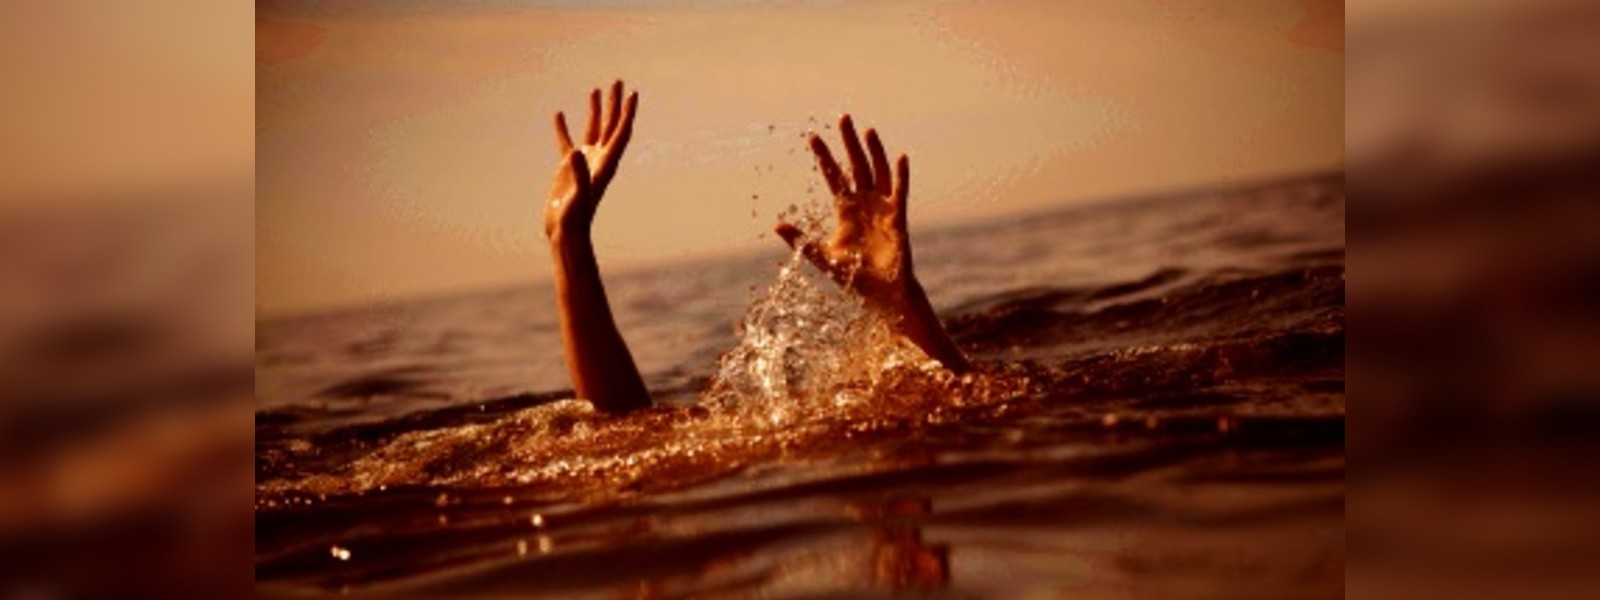 Teenage boy drowns in Rideegama